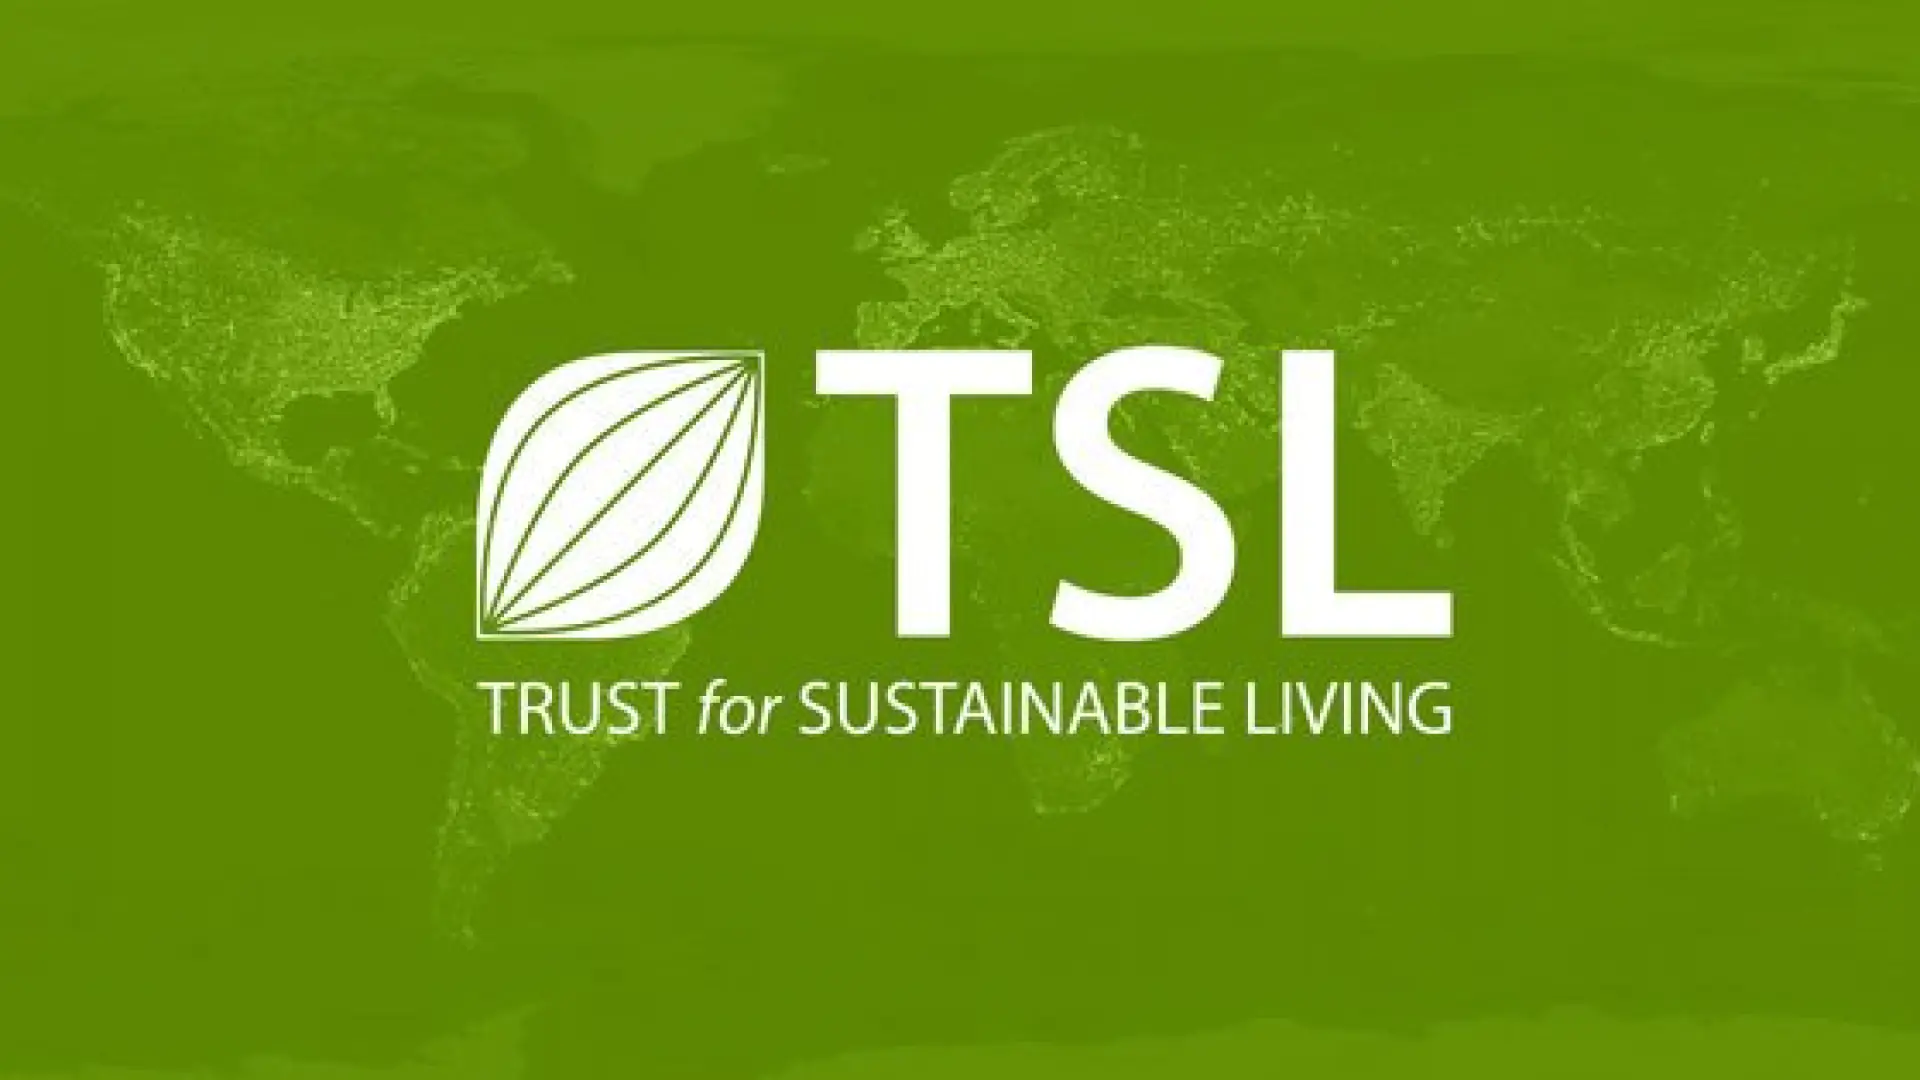 Maktab o'quvchilari uchun "Trust for Sustainable Living" xalqaro insholar tanlovi